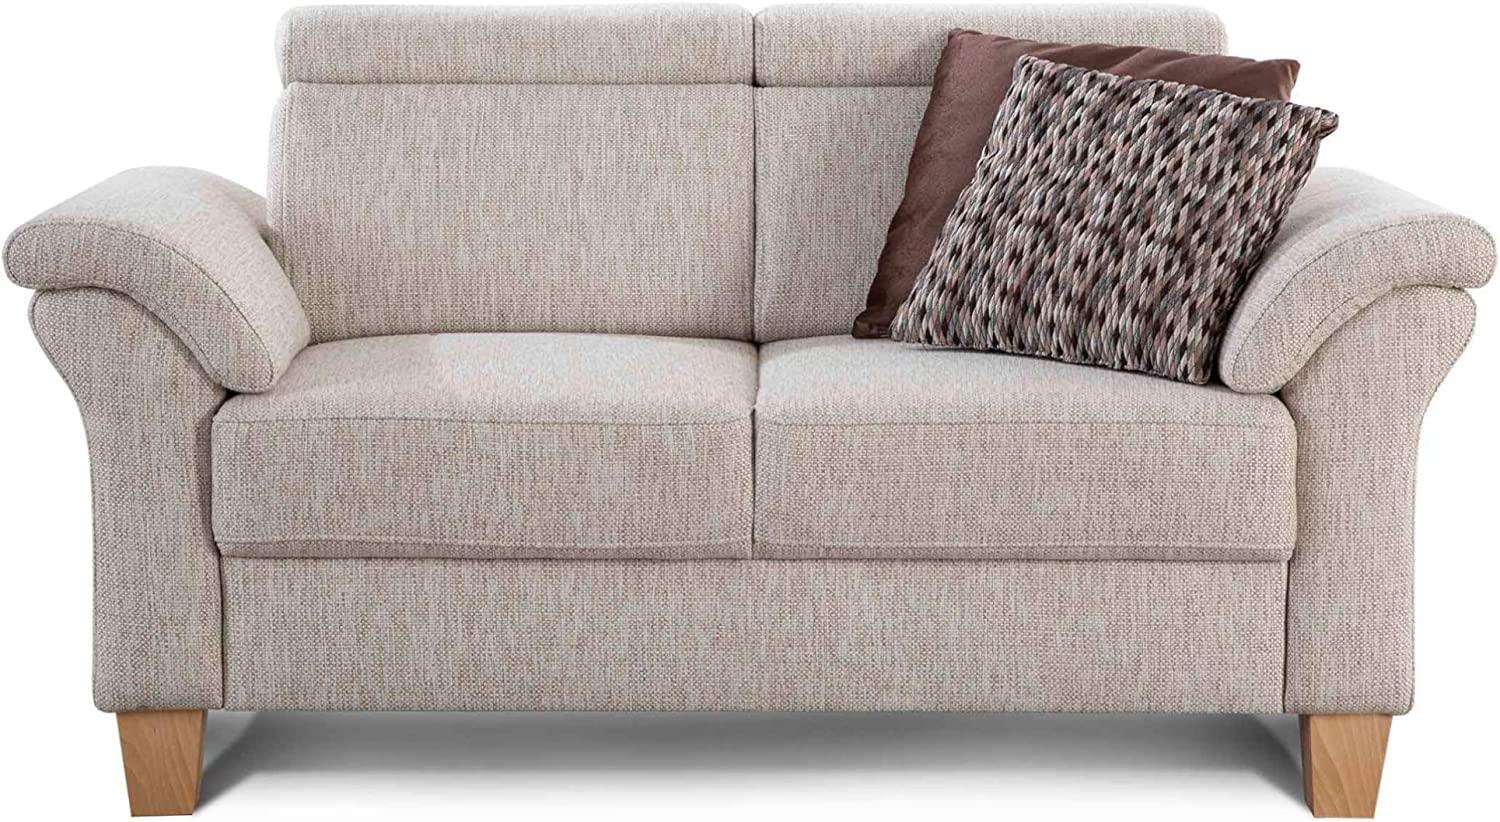 Cavadore 2-Sitzer Sofa Ammerland / Couch mit Federkern im Landhausstil / Inkl. verstellbaren Kopfstützen / 156 x 84 x 93 / Strukturstoff weiß-beige Bild 1